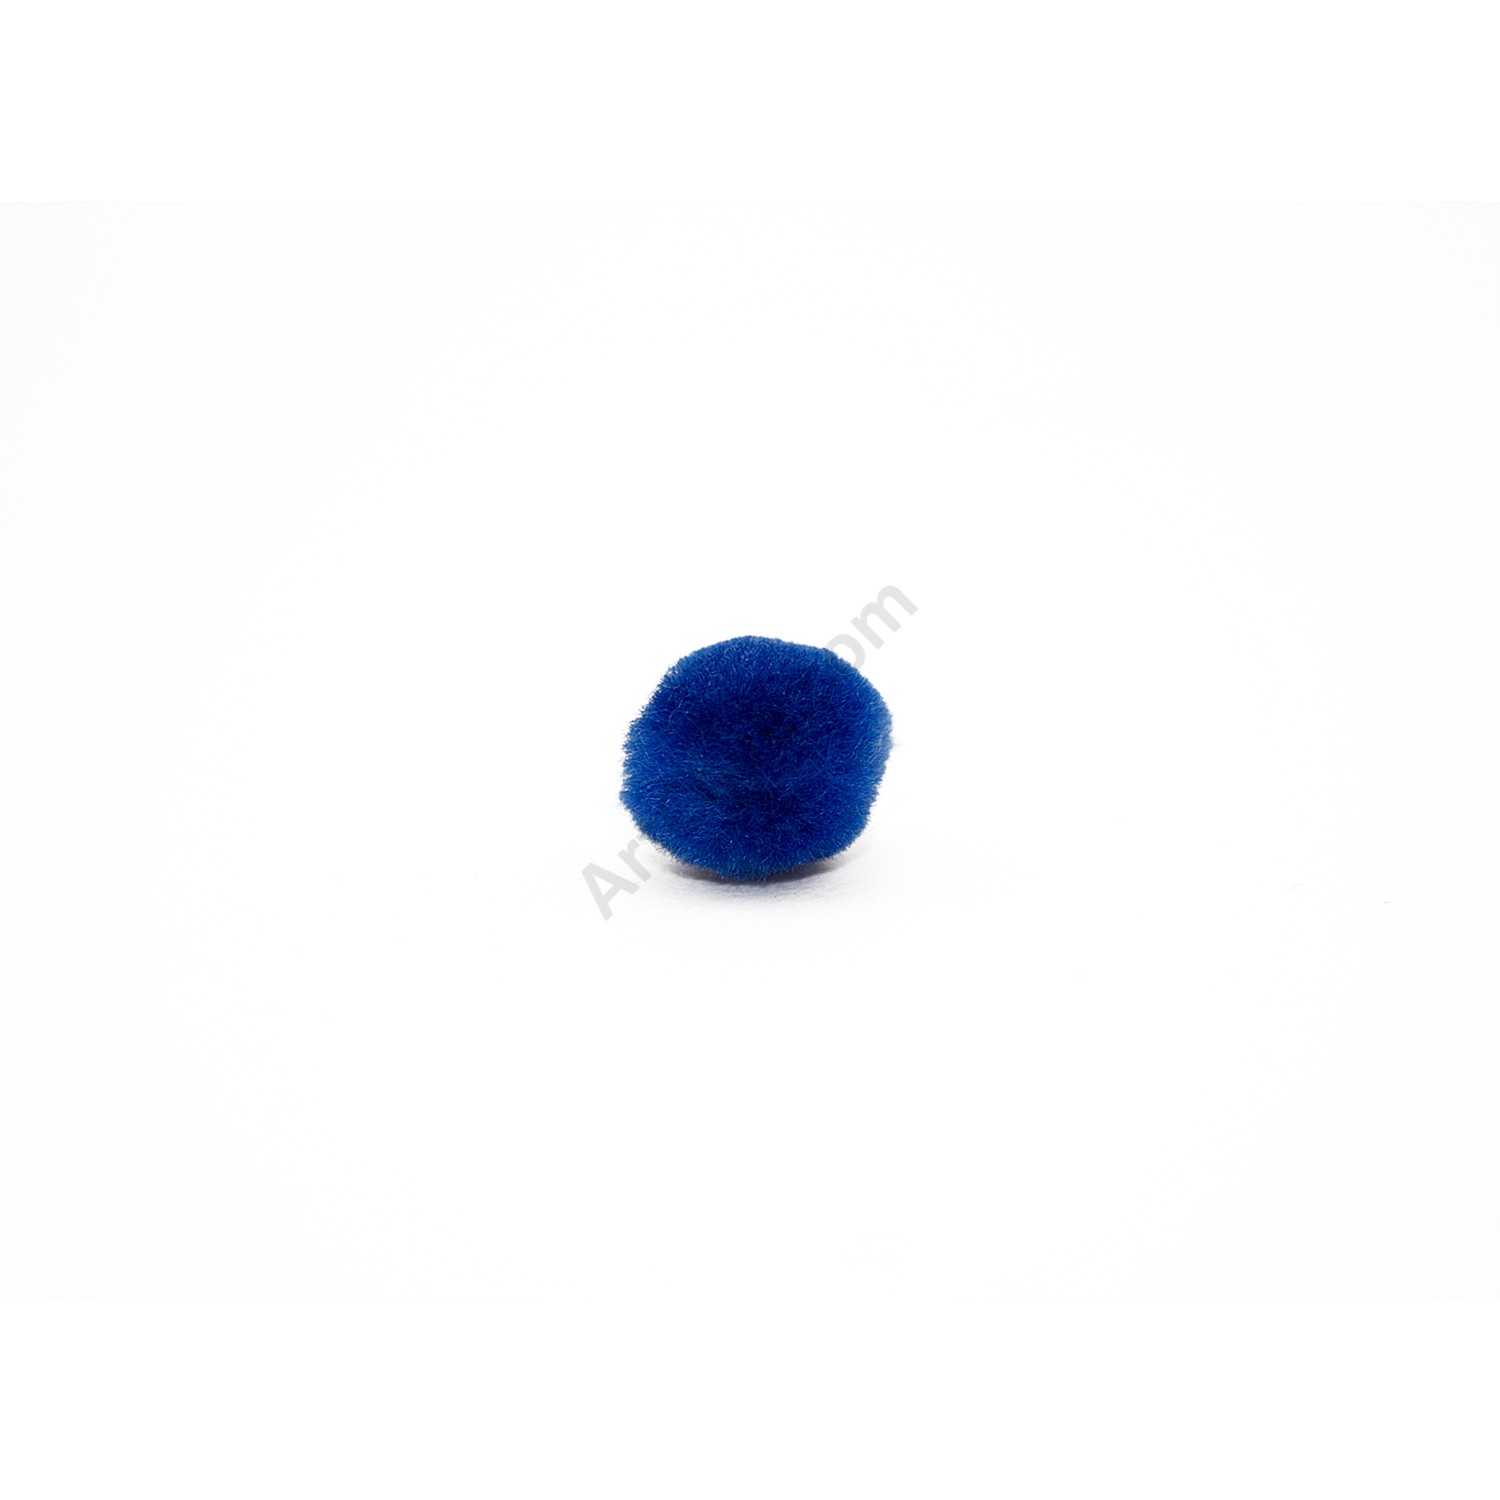 3/4 inch Light Blue Small Craft Pom Poms 100 Pieces